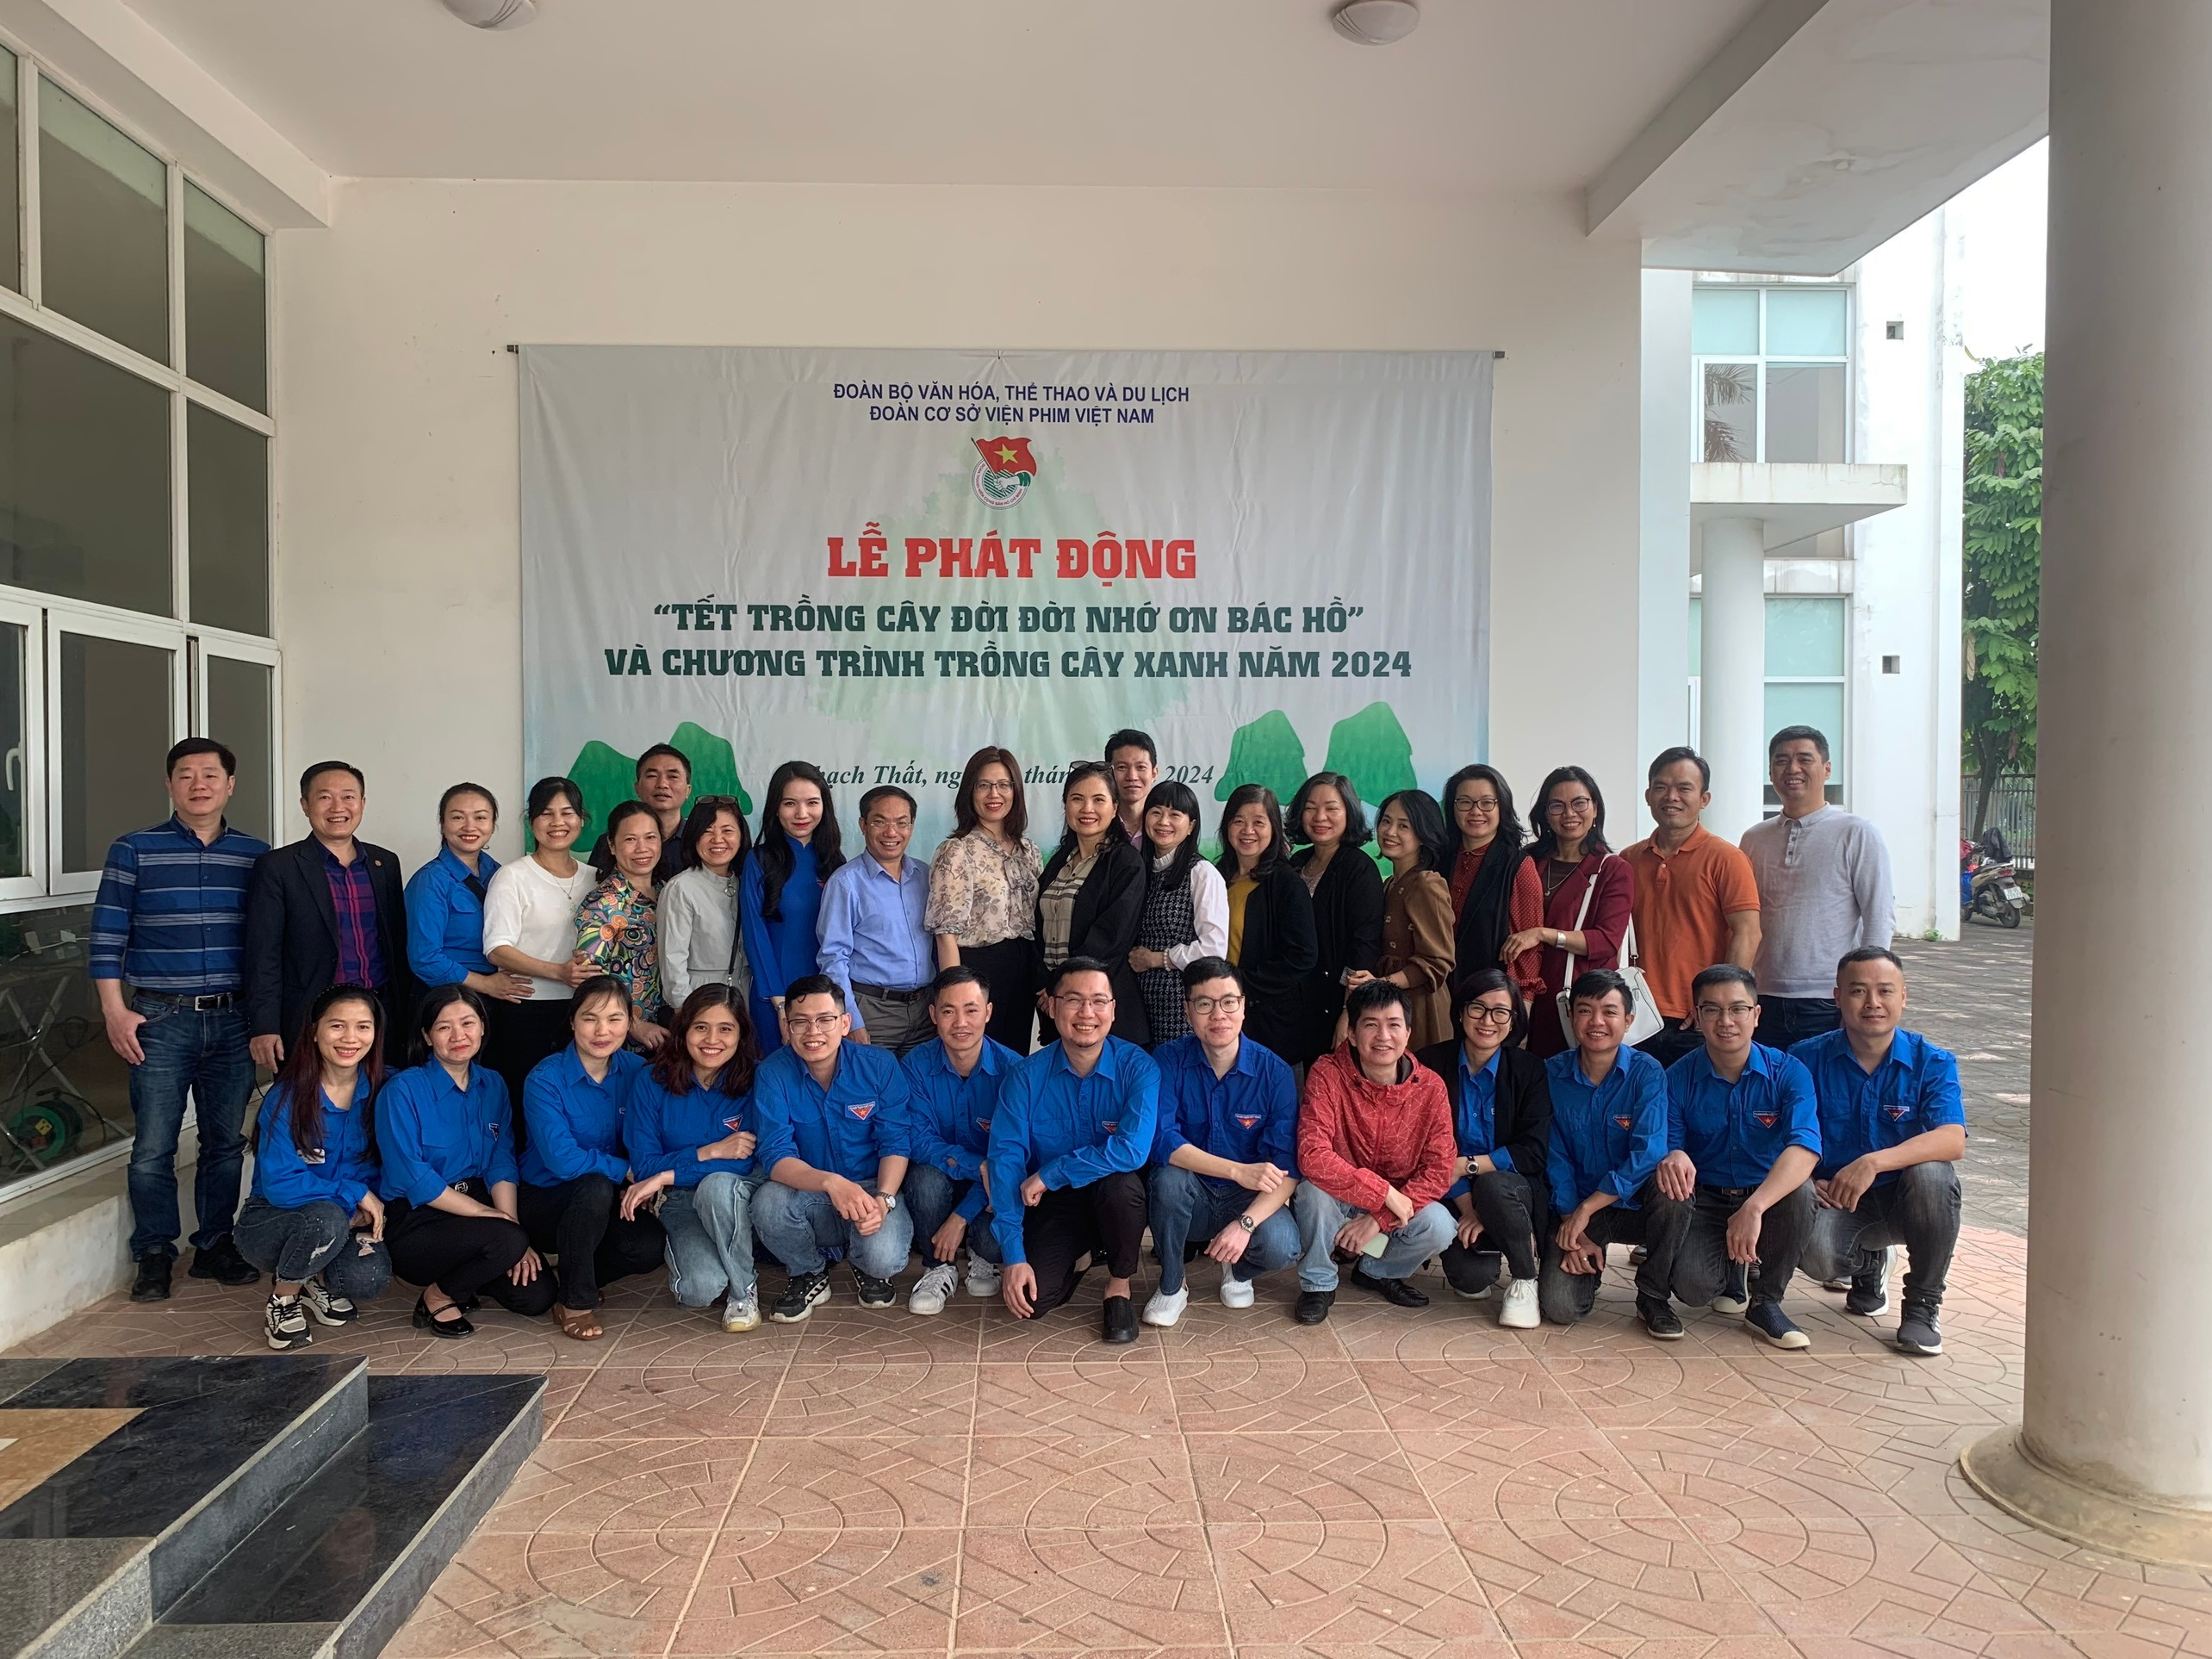 Tết trồng cây Đời đời nhớ ơn Bác Hồ của Đoàn cơ sở Viện Phim Việt Nam